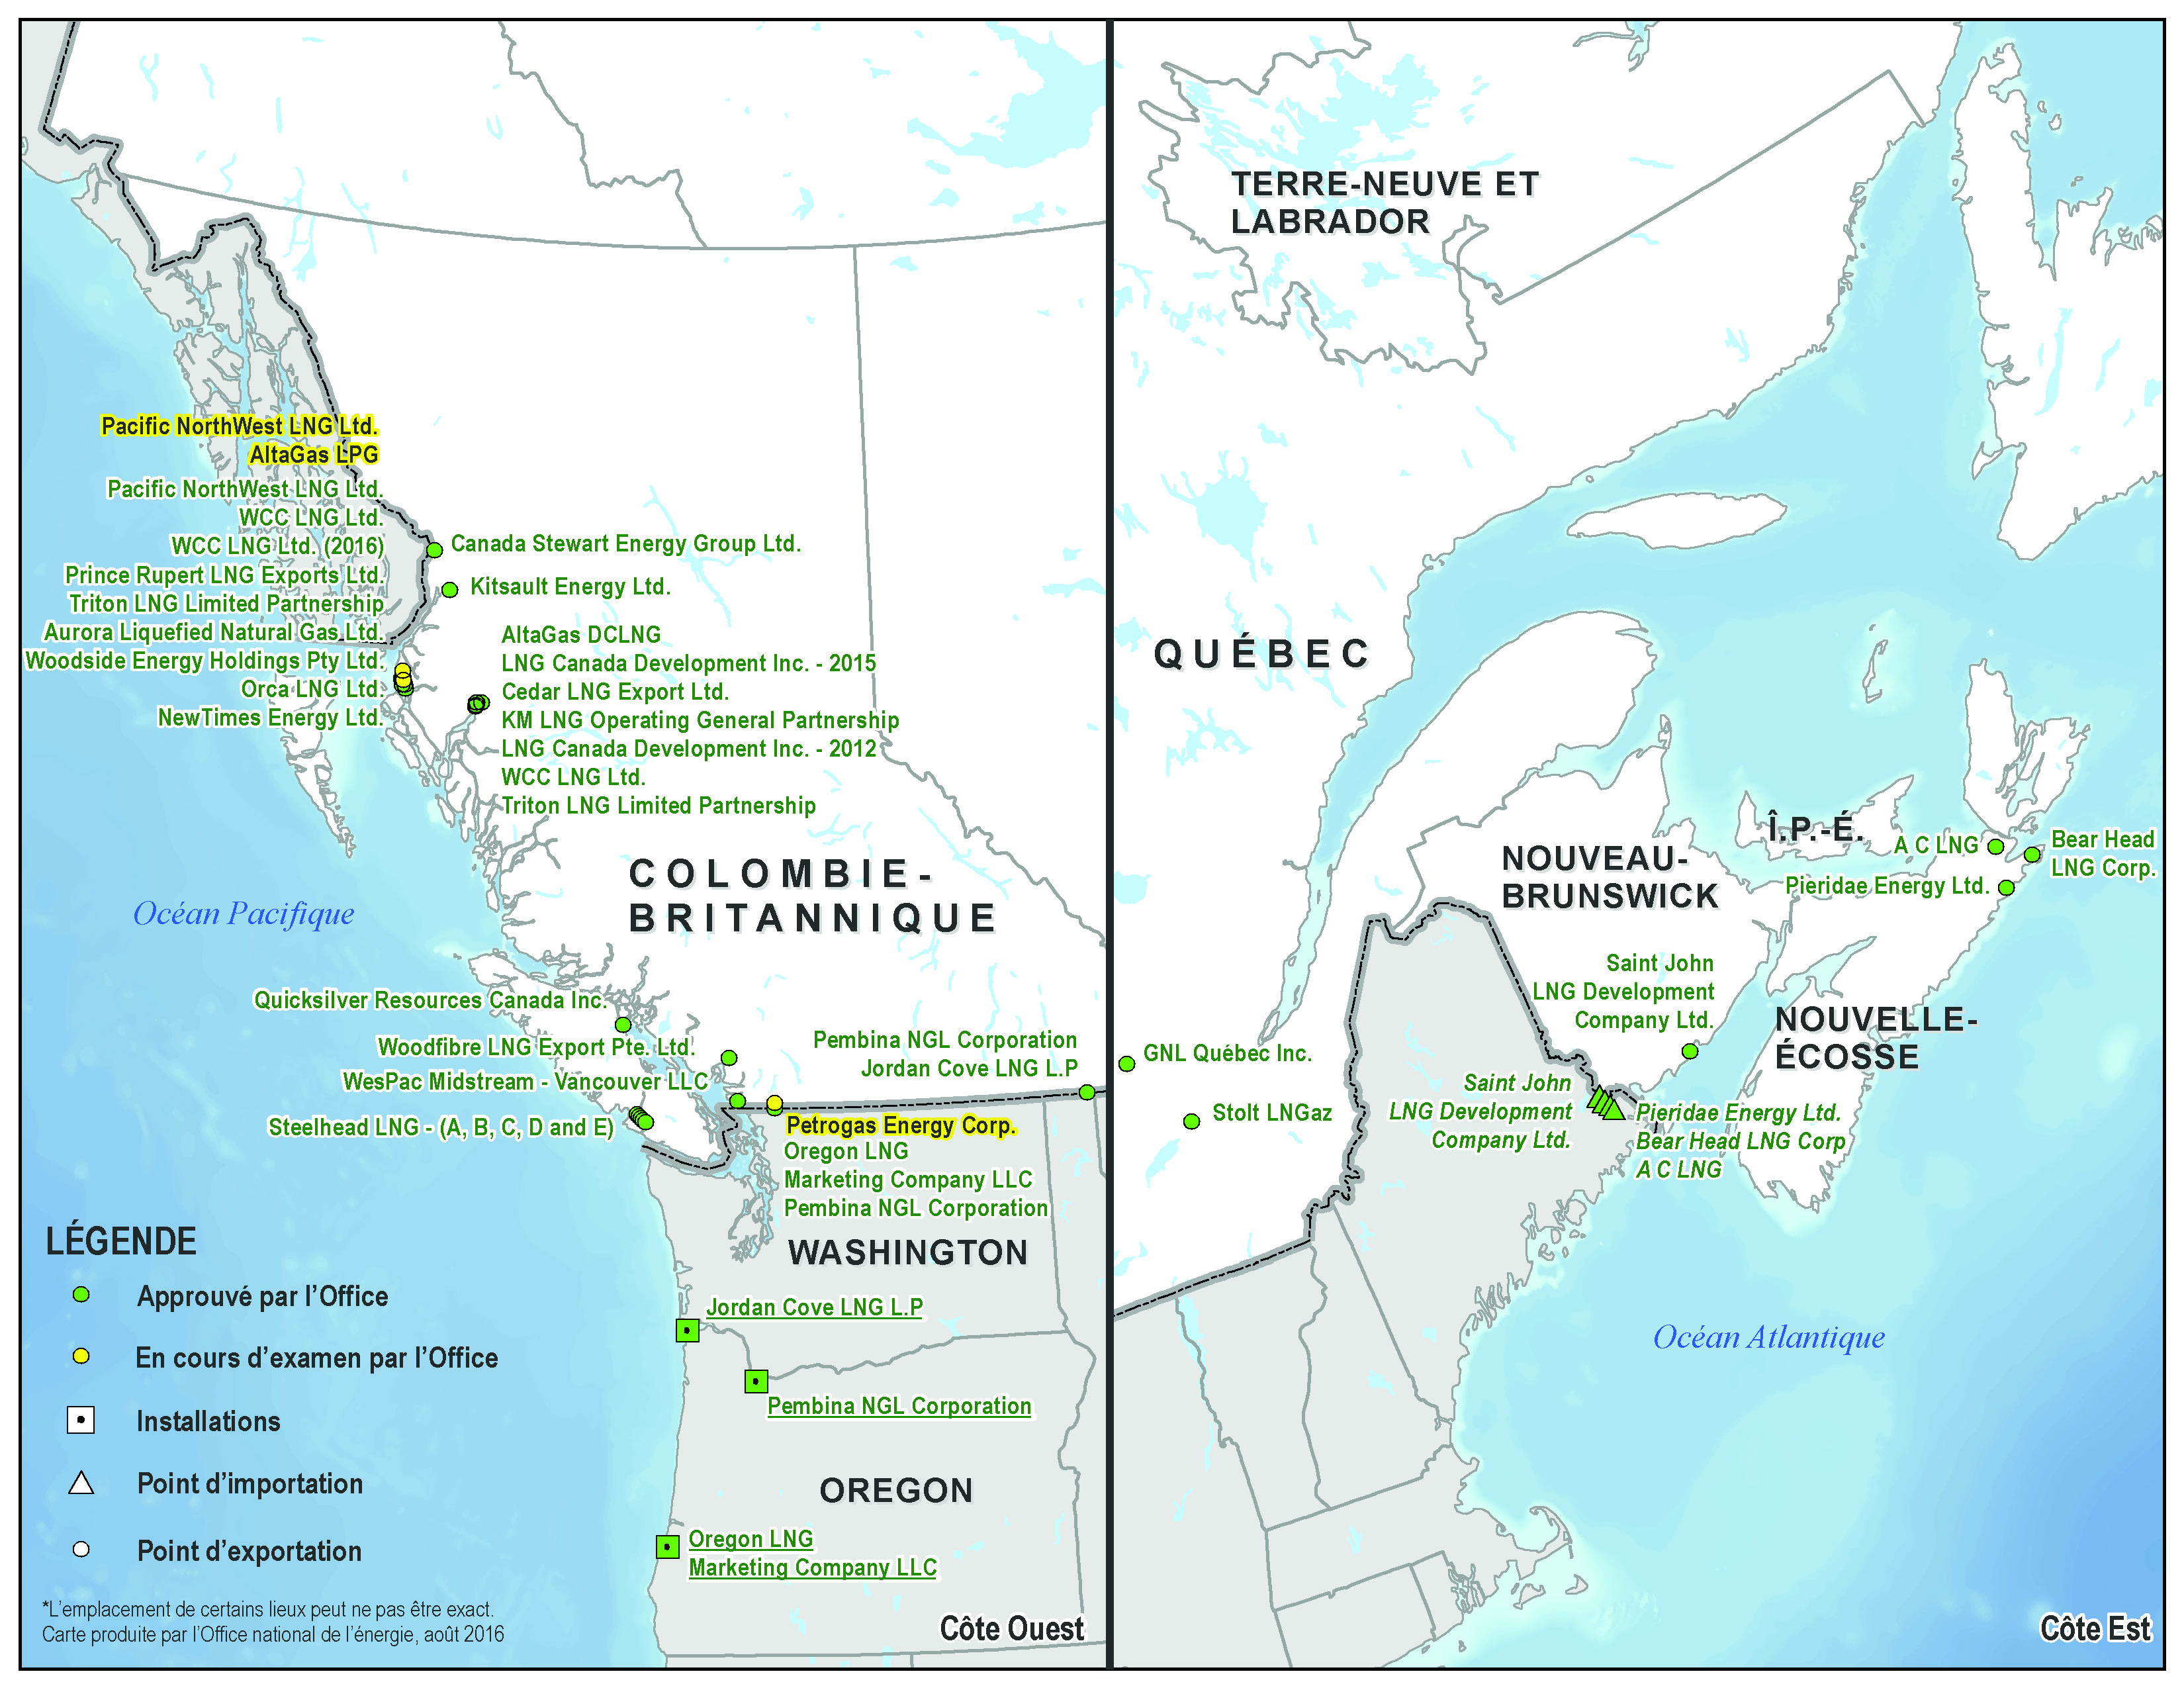 Cette carte géographique montre les côtes est et ouest du Canada ainsi que le nord des États-Unis. Elle indique les endroits où sont proposées des installations visées par les demandes de licence qui ont été approuvées par l’Office et celles qui sont à l’étude. La majorité des installations sont situées le long de la côte nord de la Colombie-Britannique; quelques-unes se trouvent sur la côte sud et l’île de Vancouver. Sur la côte est du Canada, il y a quelques installations au Nouveau-Brunswick et dans le nord de la Nouvelle-Écosse. Deux projets sont également envisagés pour le Québec.